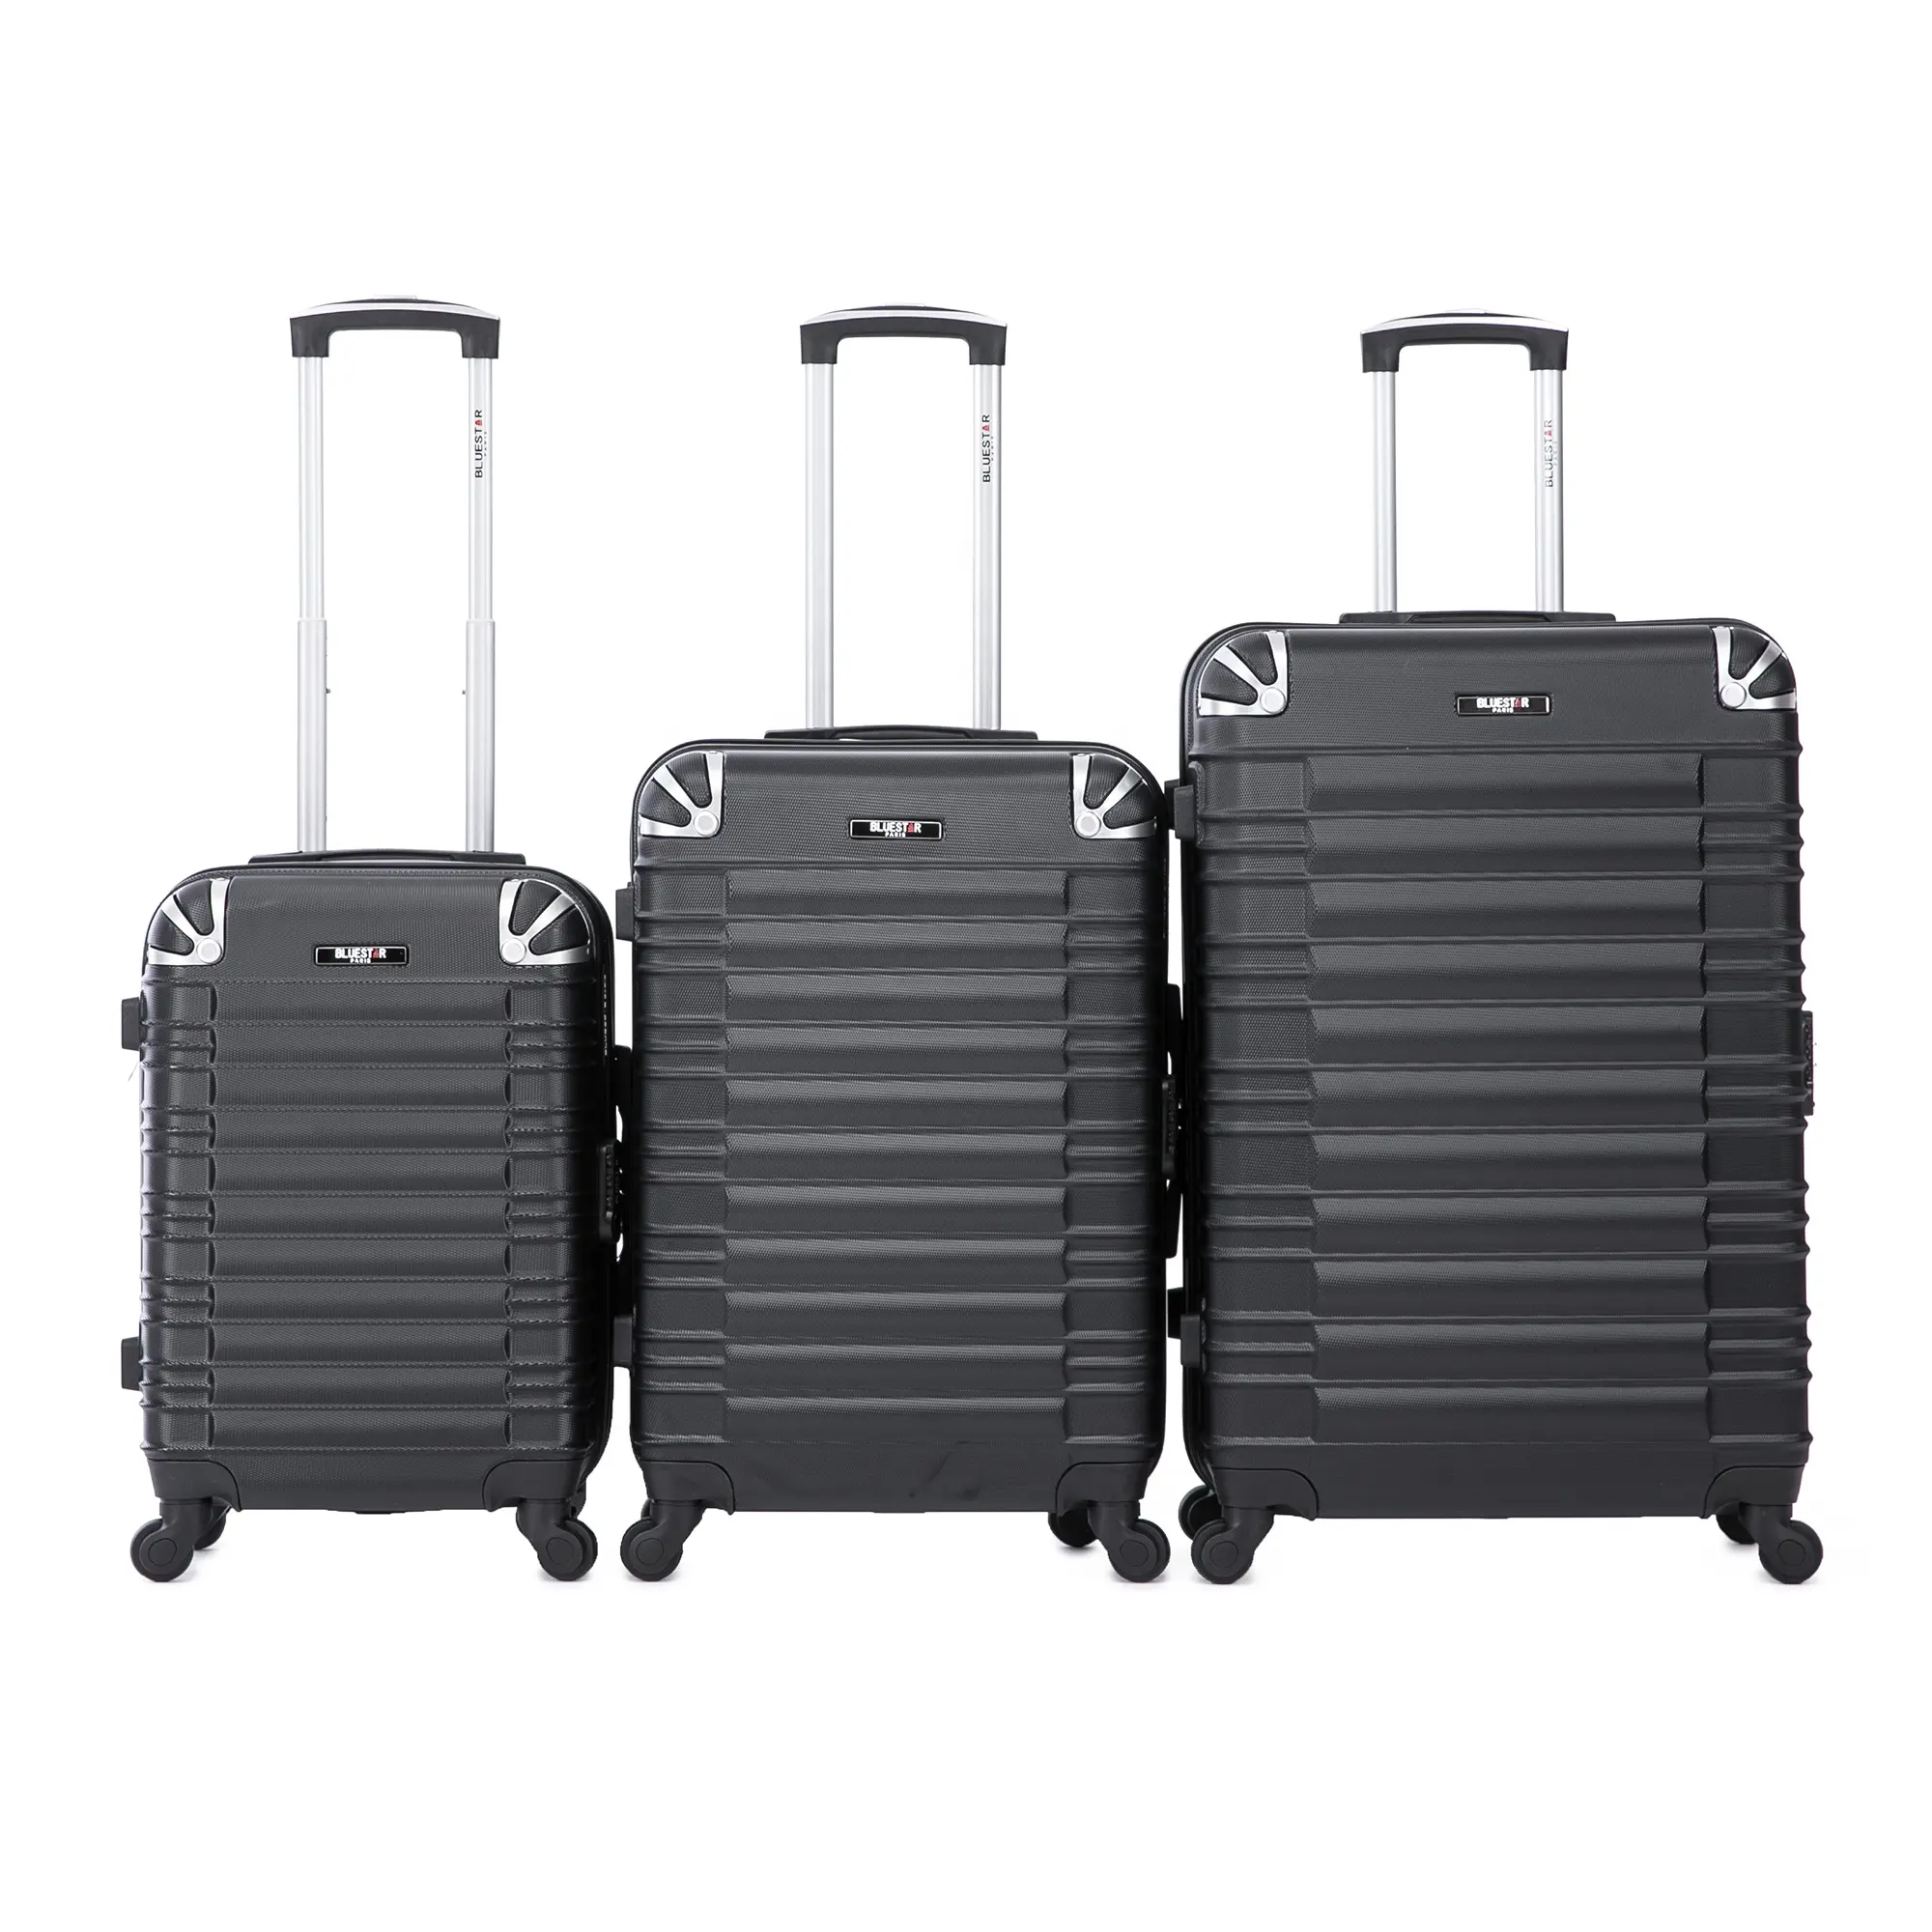 OEM ODM कस्टम मेड 3PCS ABS ट्राली सामान सूटकेस यात्रा पर रोलिंग एकल पहिया ले जाने बैग संयोजन ताला 360 डिग्री पहिया